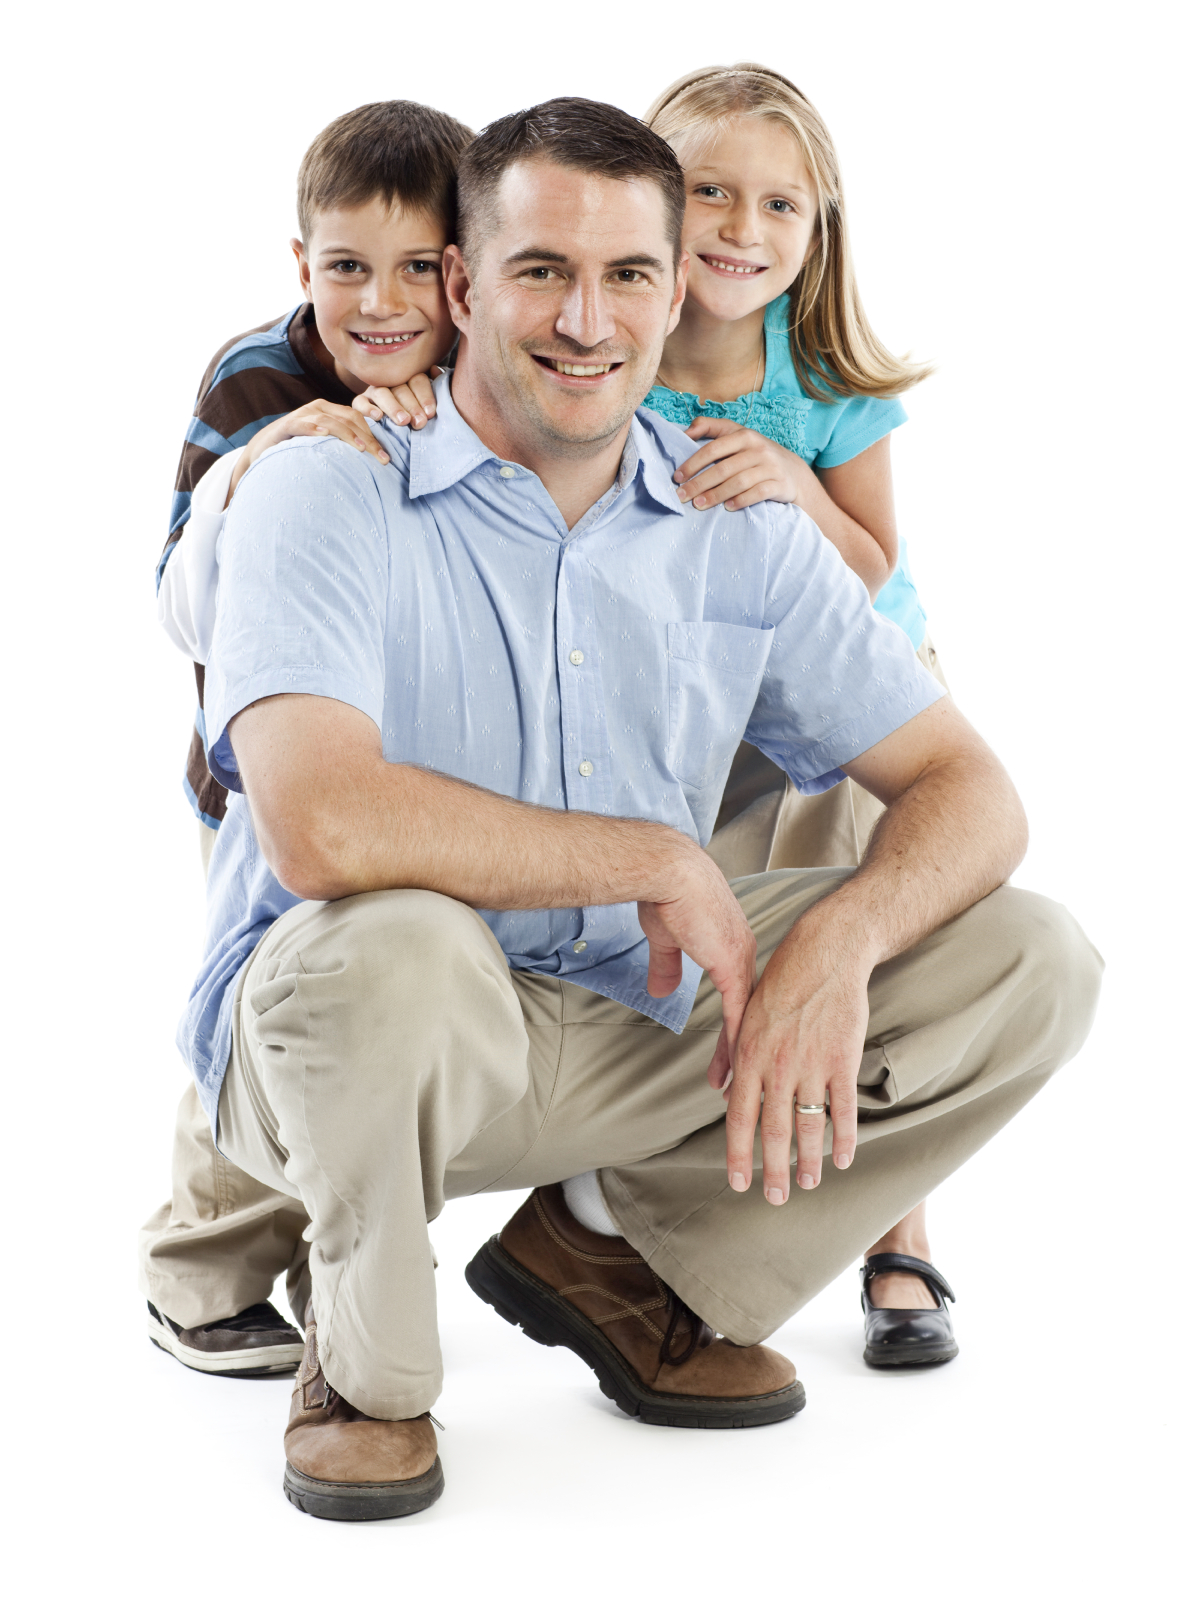 Parents pay. Отец и двое детей Сток фото. Фото семейной покупки на белом фоне.